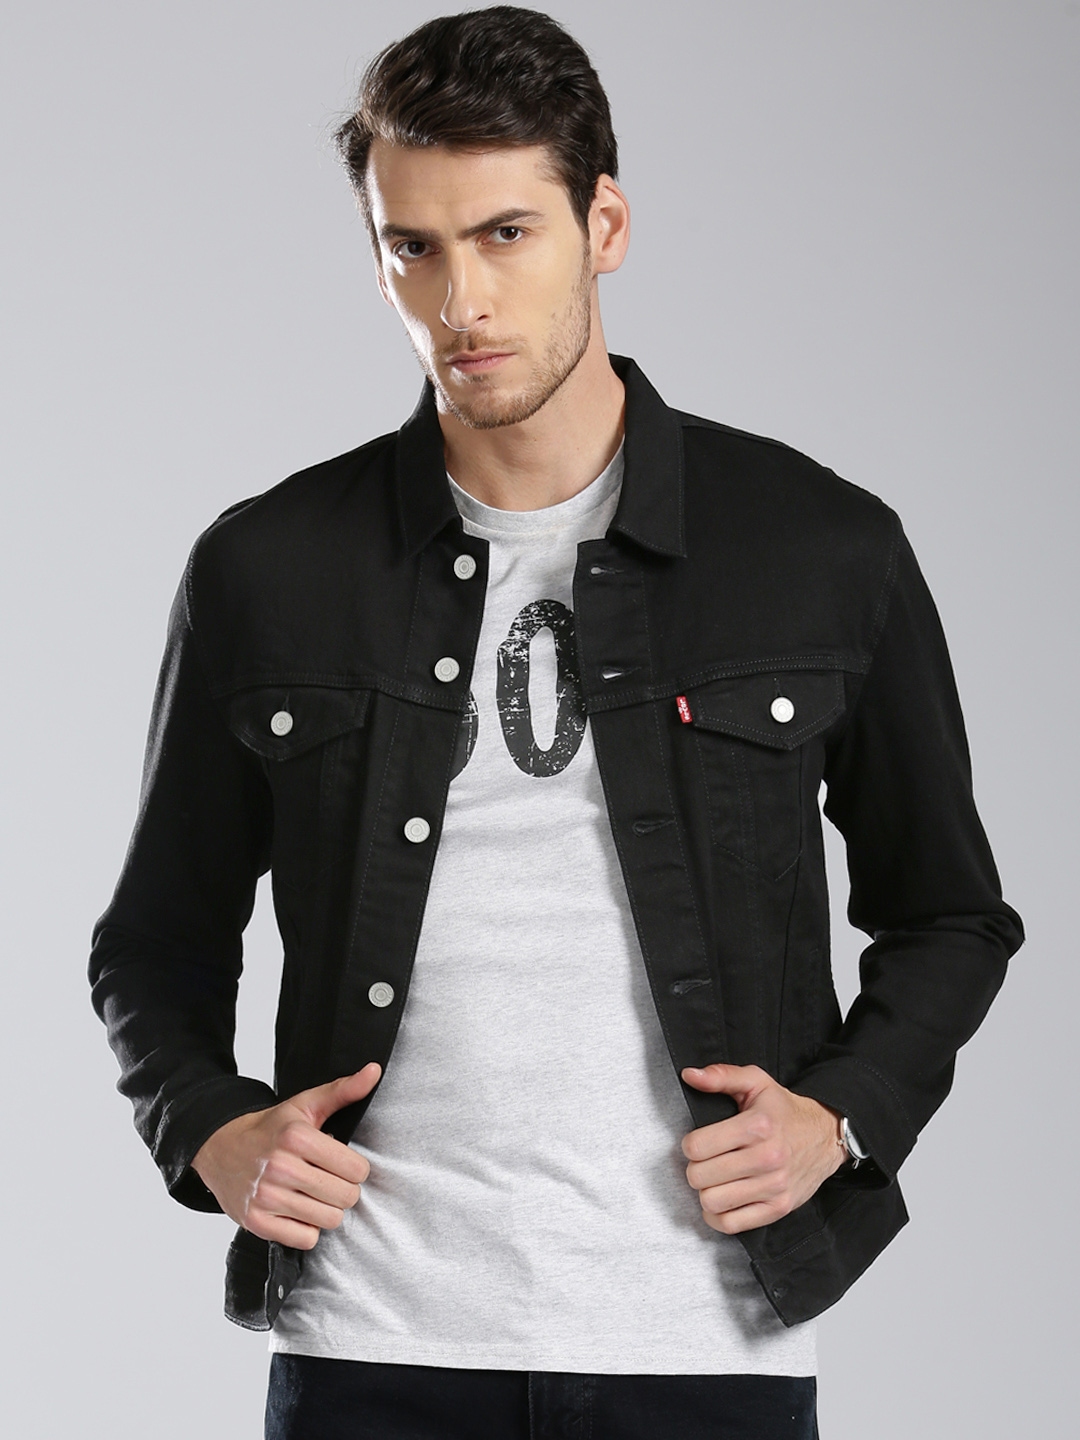 Buy Levis Men Black Solid Denim Jacket - Jackets for Men 2451949 | Myntra